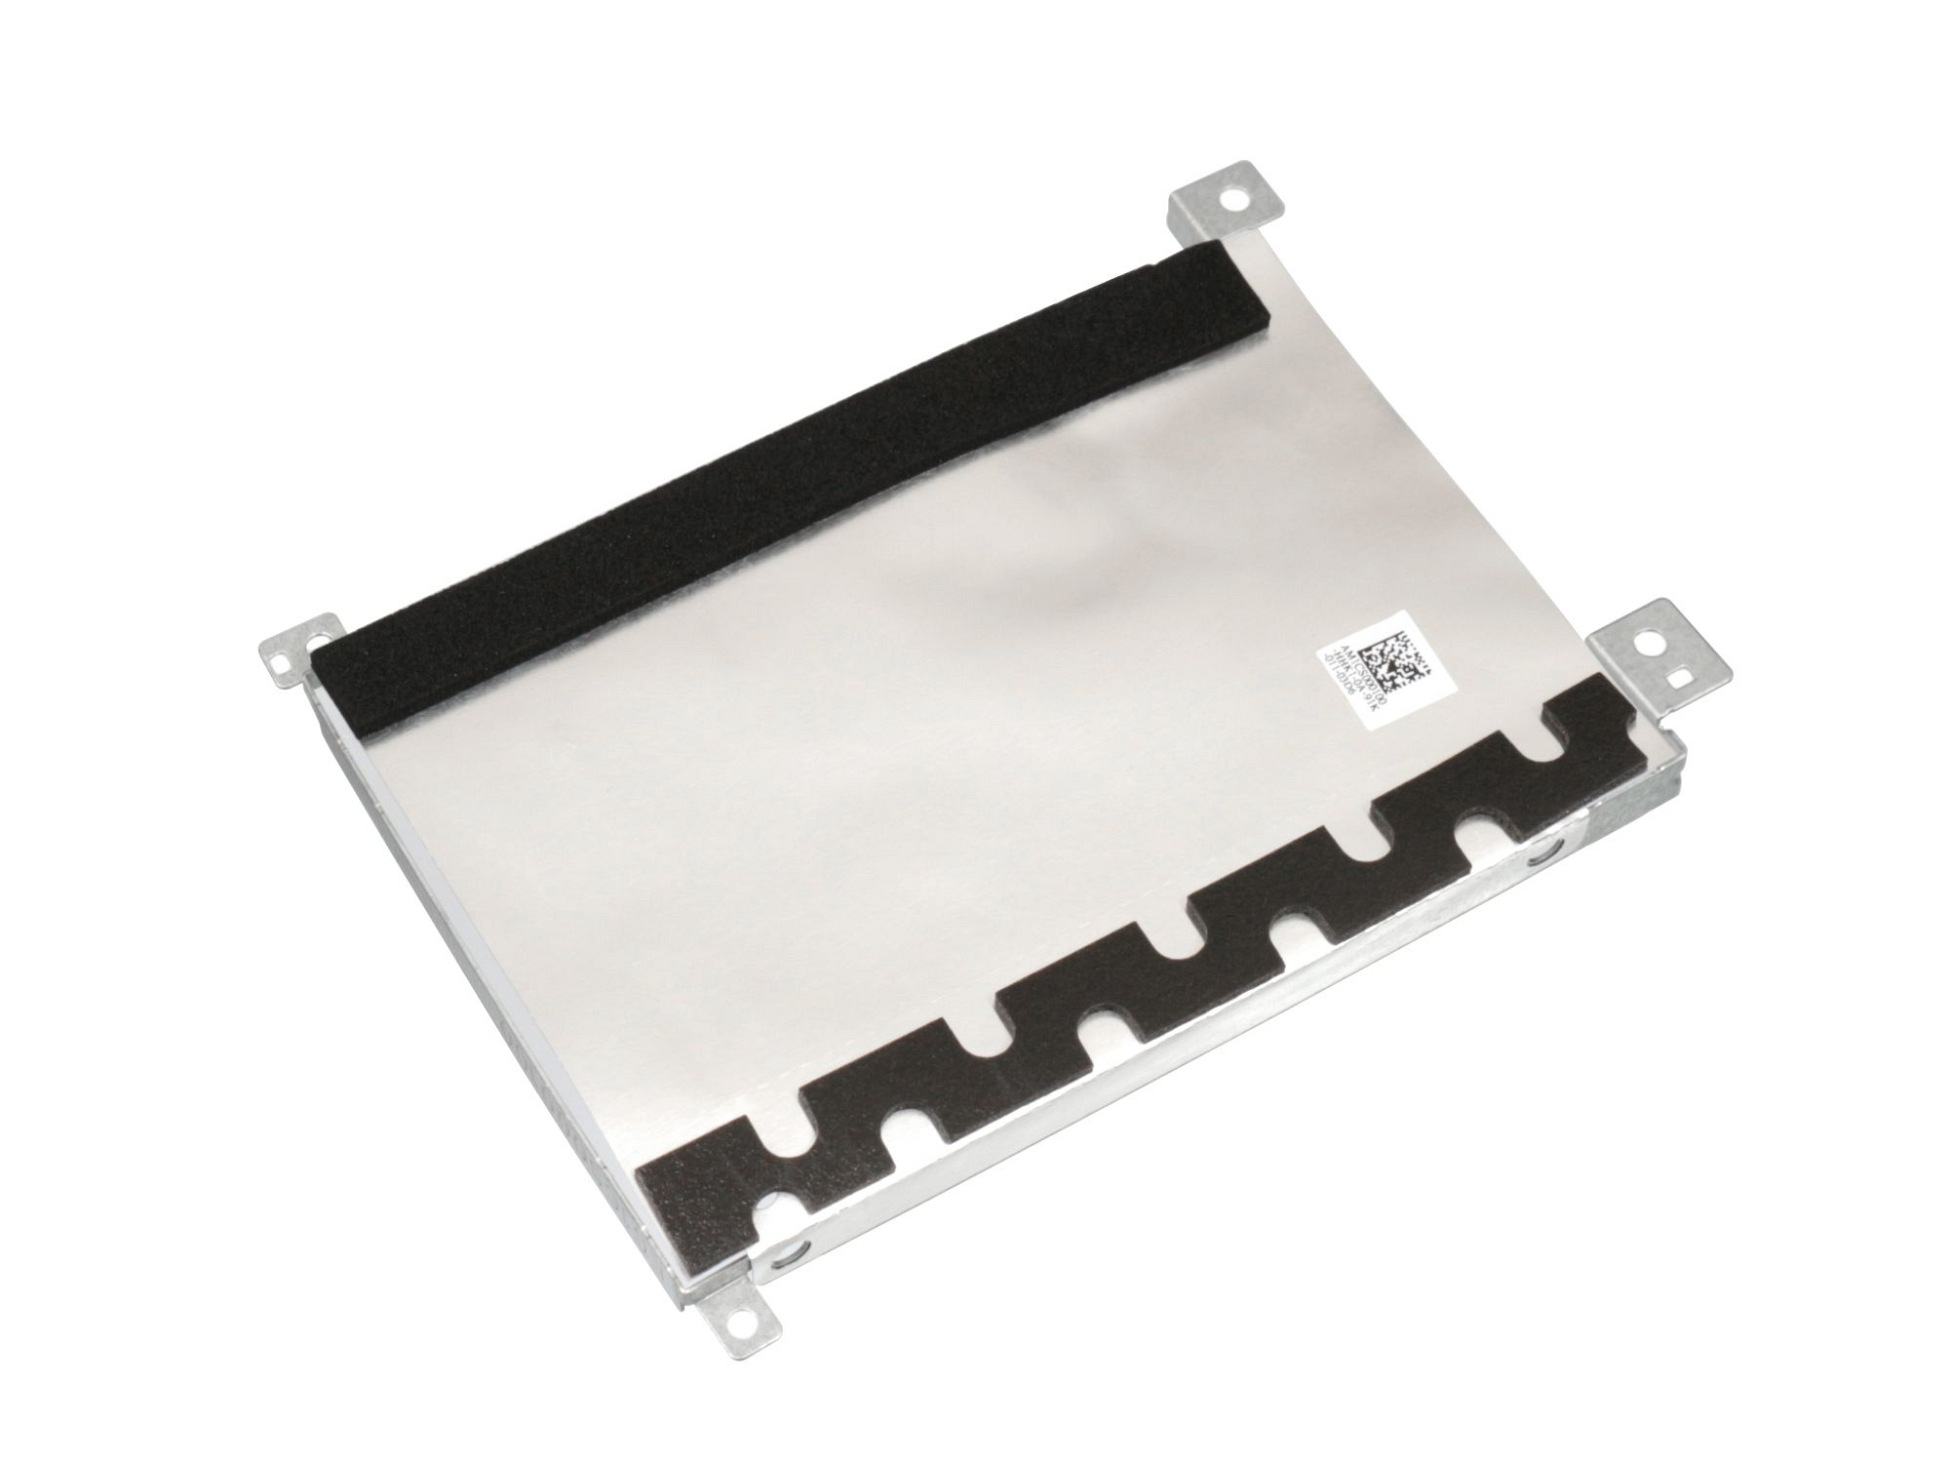 Festplatten-Einbaurahmen für den 1. Festplatten Schacht Original für Lenovo IdeaPad S145-14IGM (81SB)